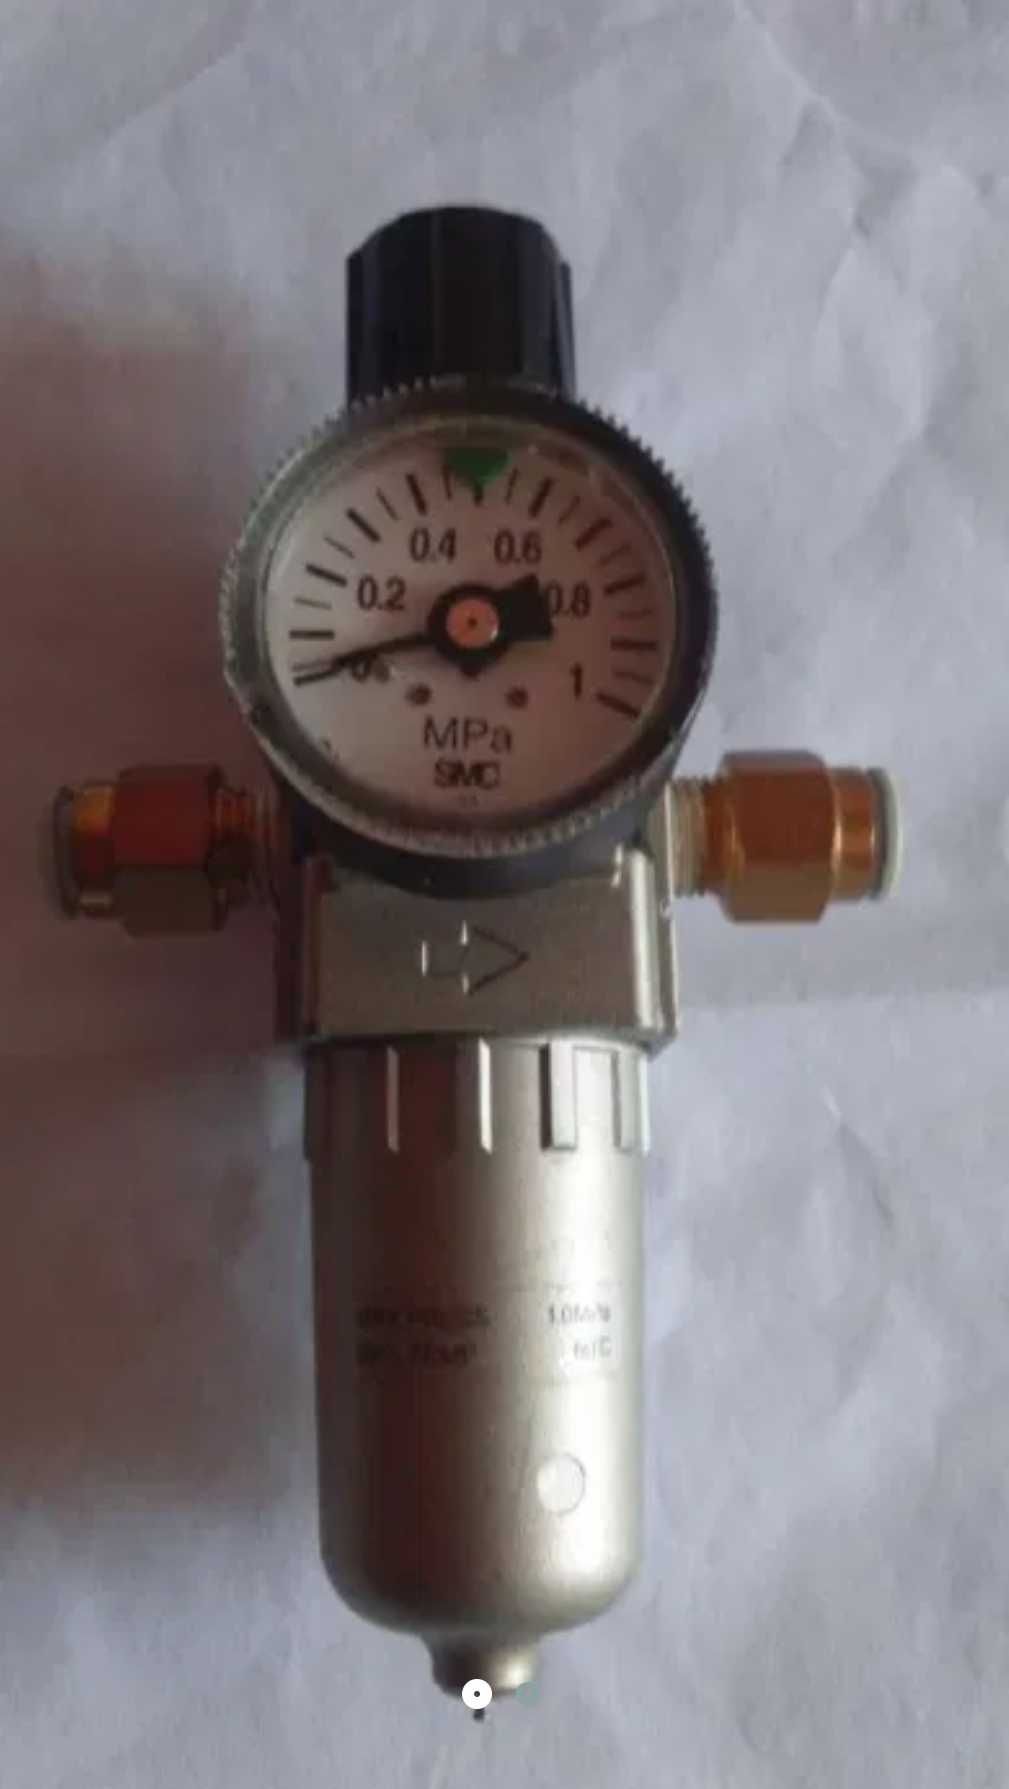 Filtro SMC regulador de Pressão AW20-02BG-2 ideal para compressor